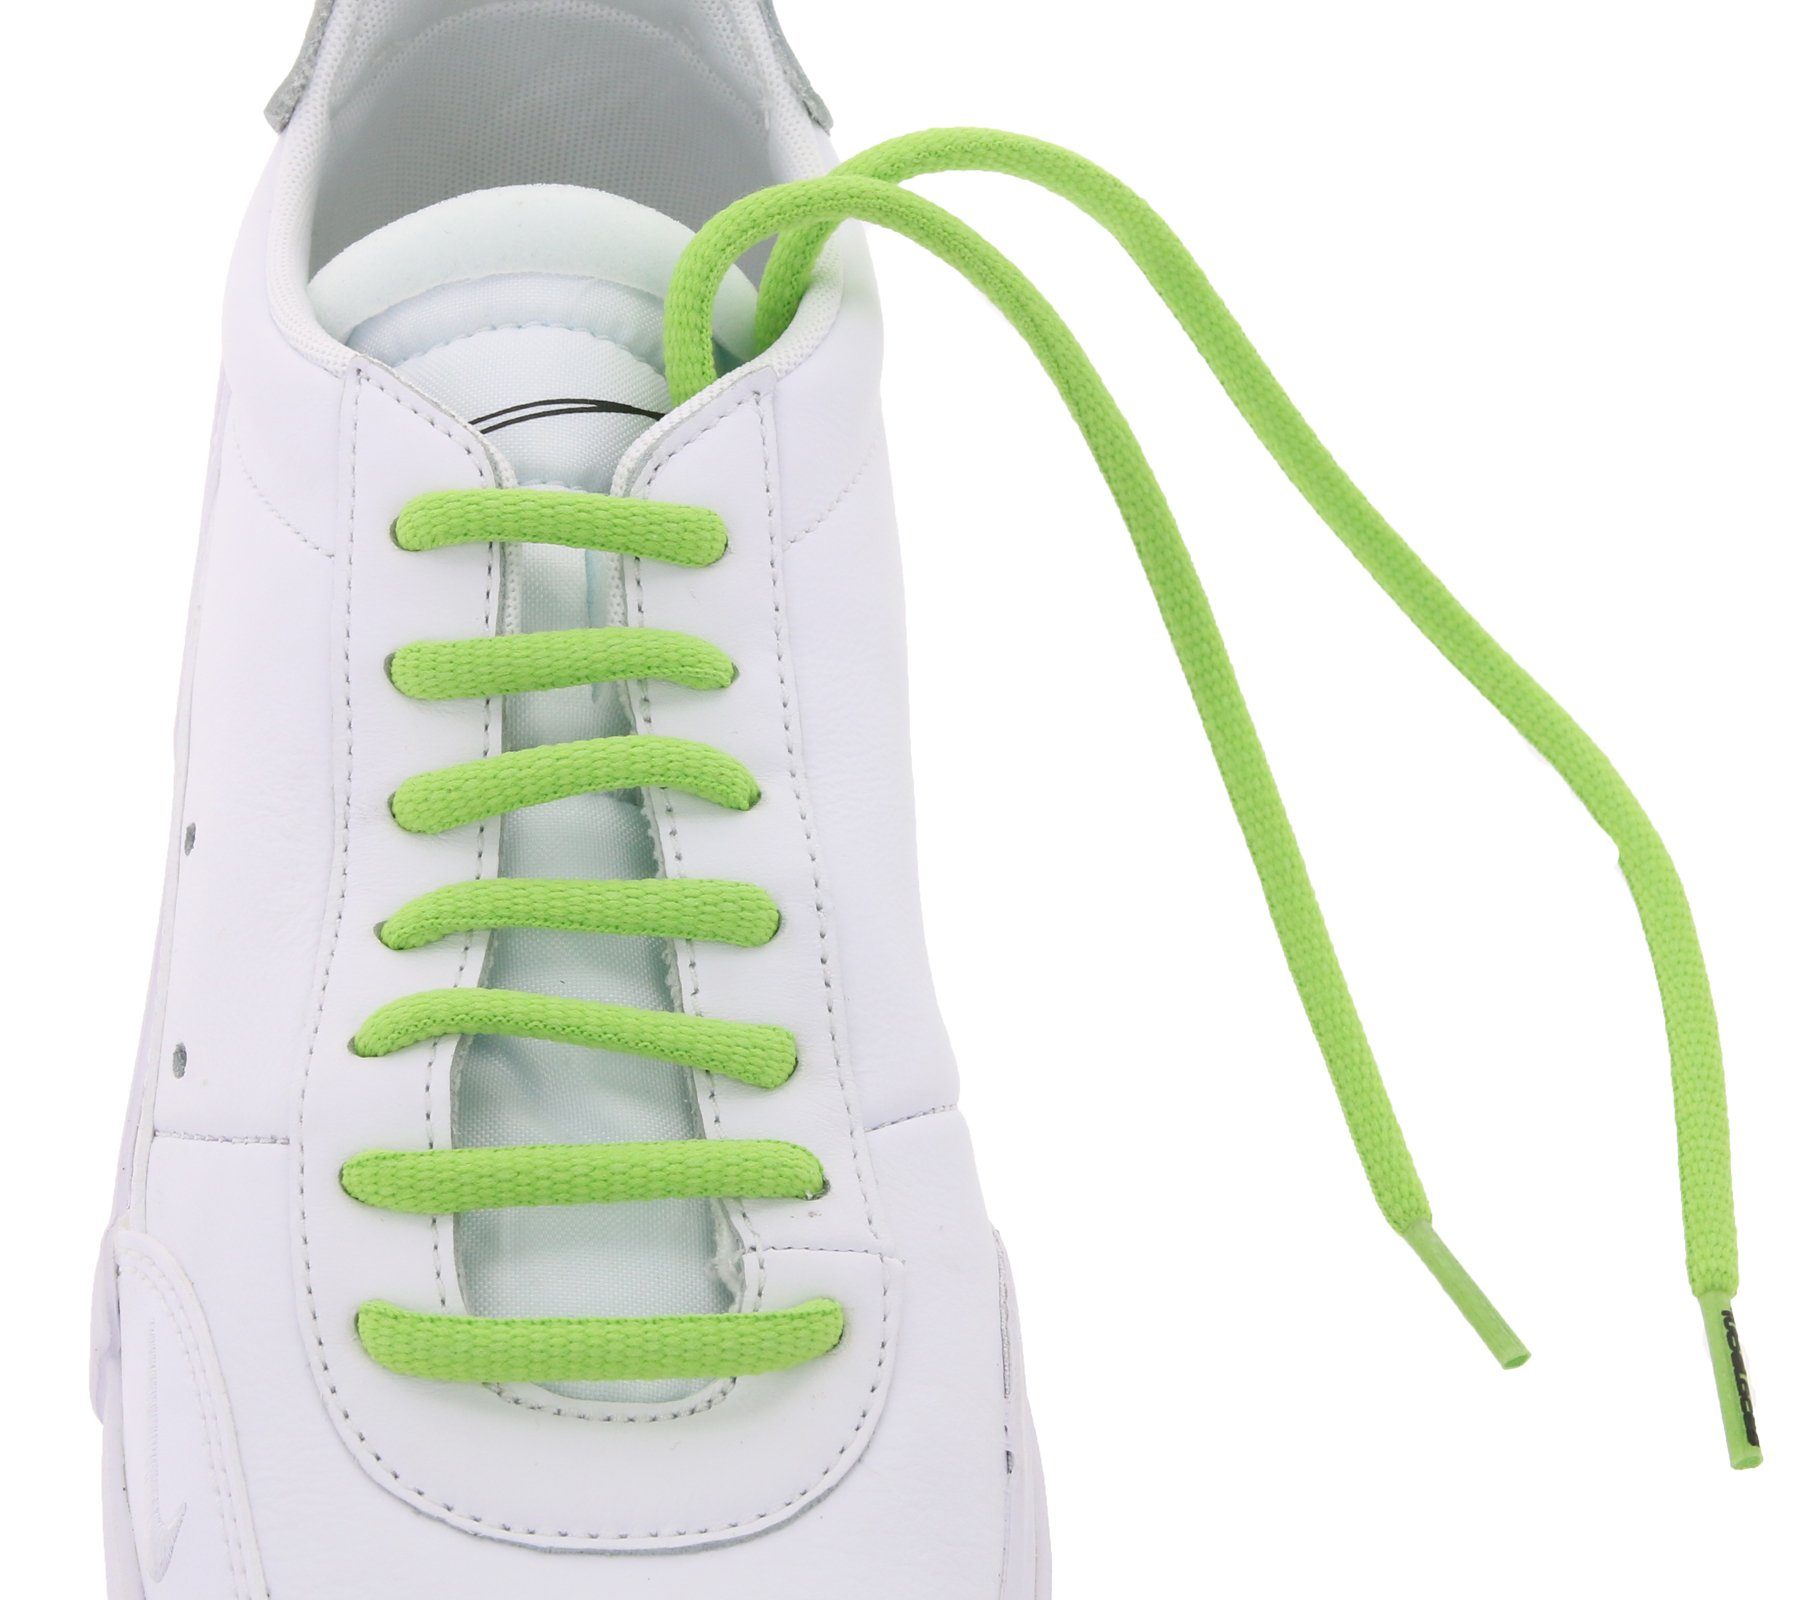 Schnürsenkel TubeLaces Schuh knallige Schnürsenkel Schuhband Grün Schnürbänder Tubelaces